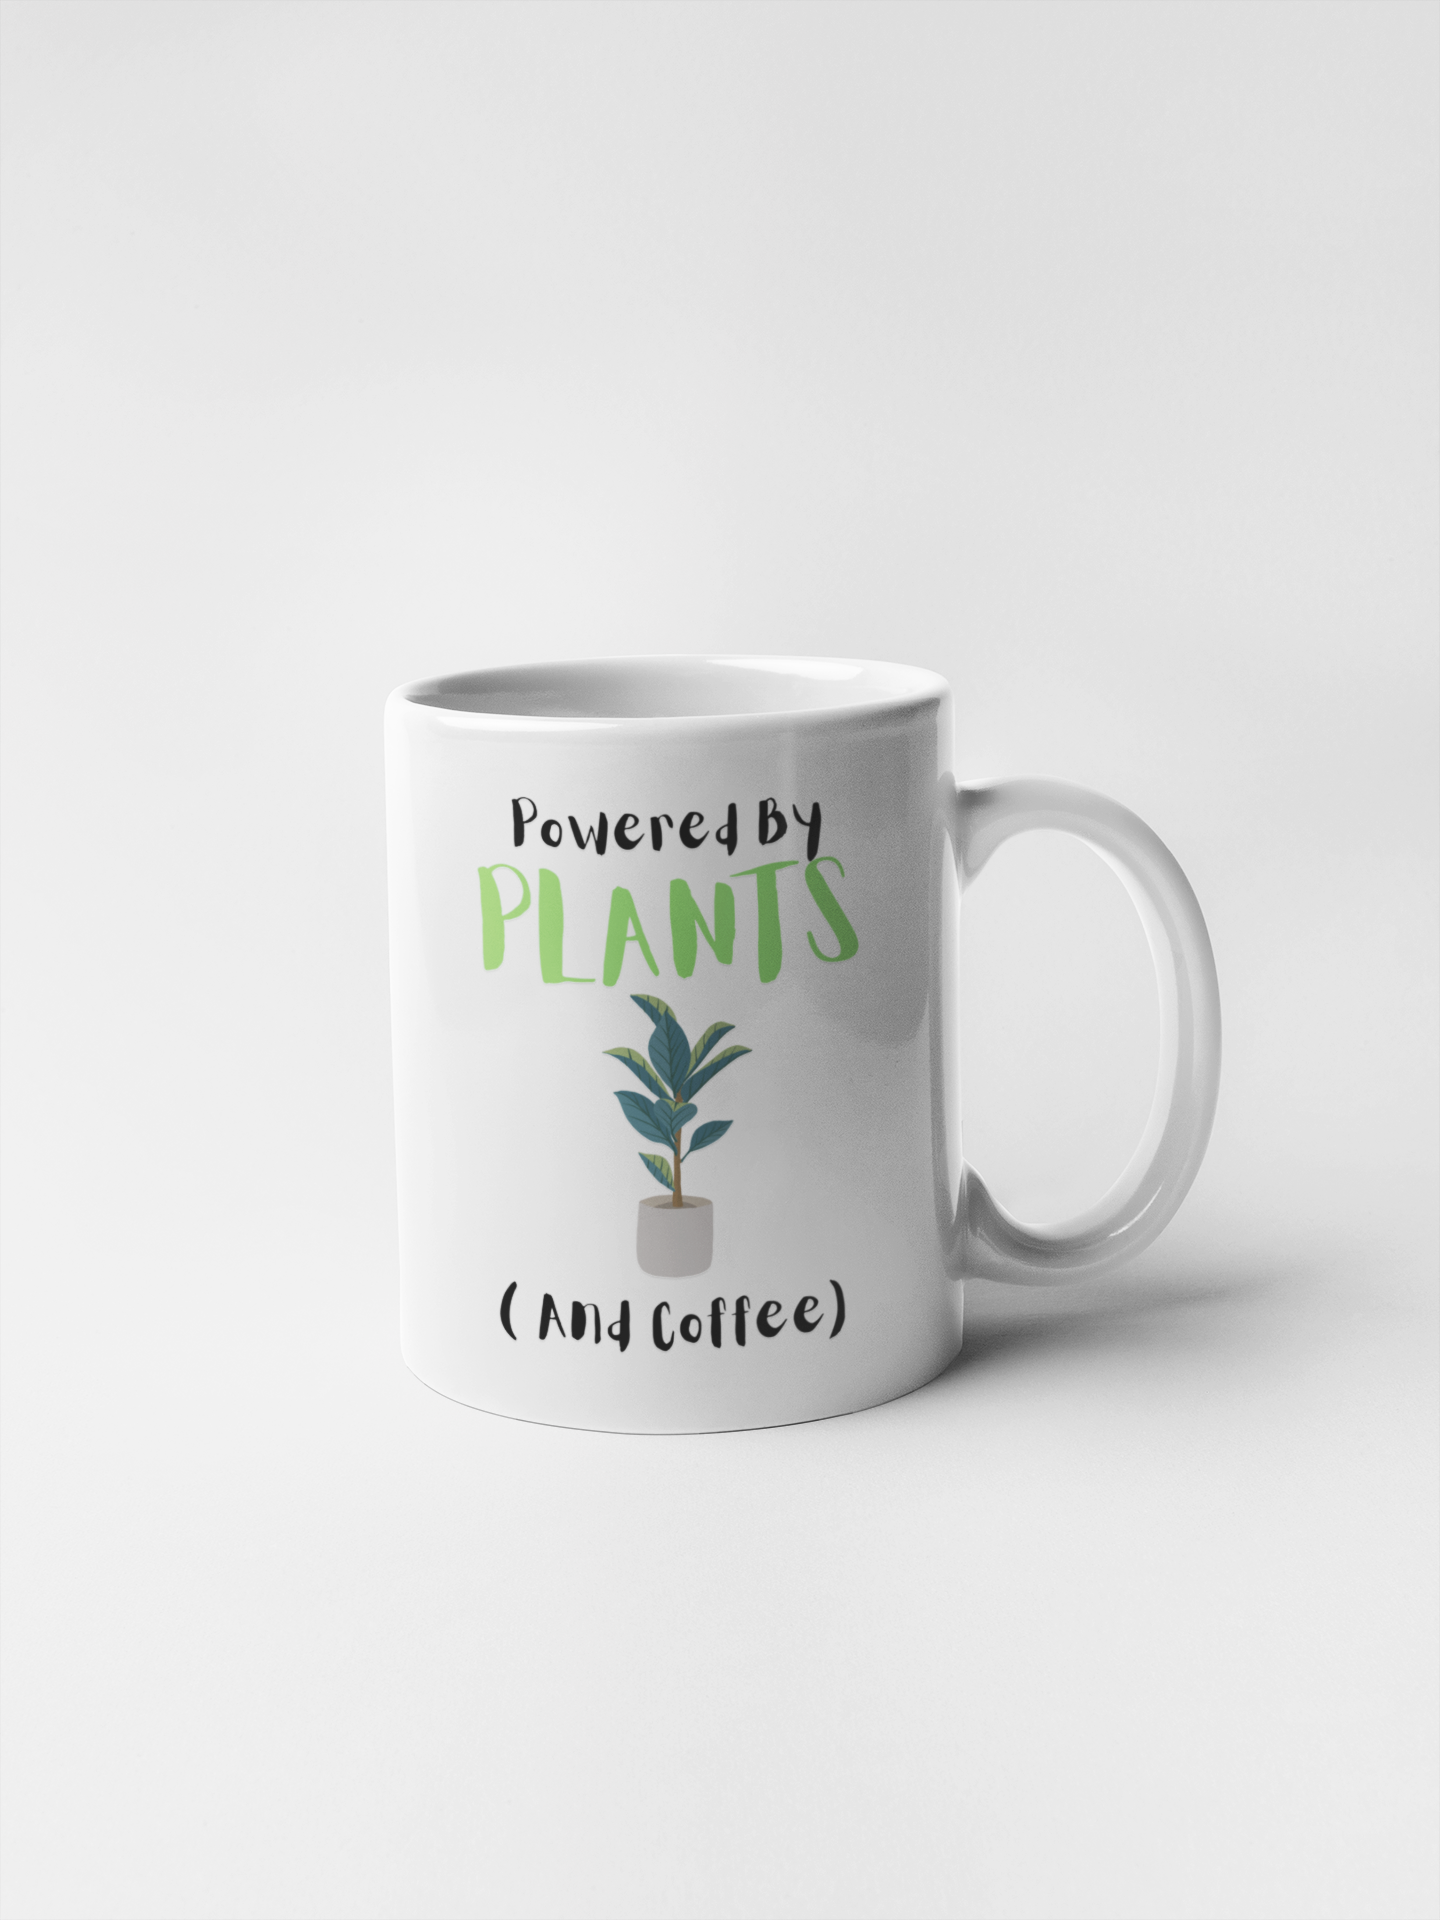 Powered by plant mug, Vegetarian Mug, Vegan Gift Ceramic Mug, Funny vegan Mug, Plant Botanical Mug, Funny Plant Mug, Plant Lover Ceramic Mug, Plant Lover Gift, Botanical Lover Gift, gardener Mug